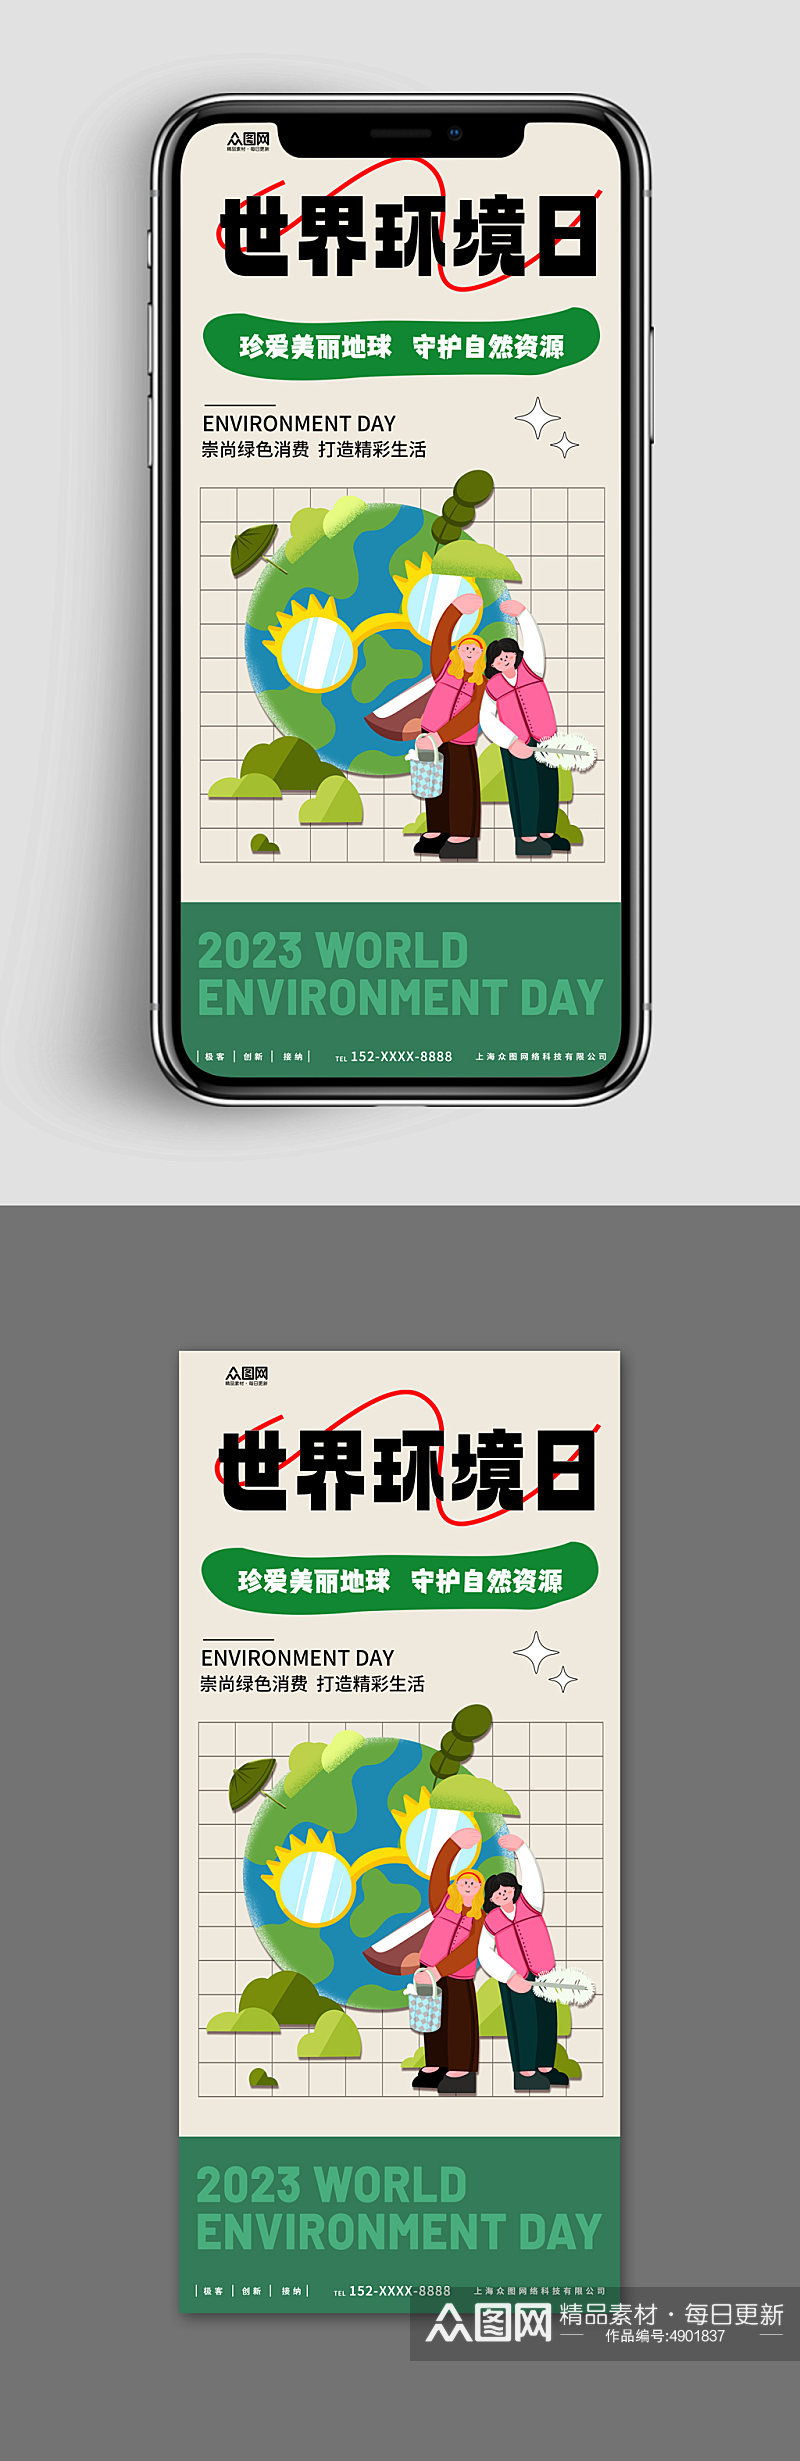 新媒体手机海报世界环境日环保宣传海报素材